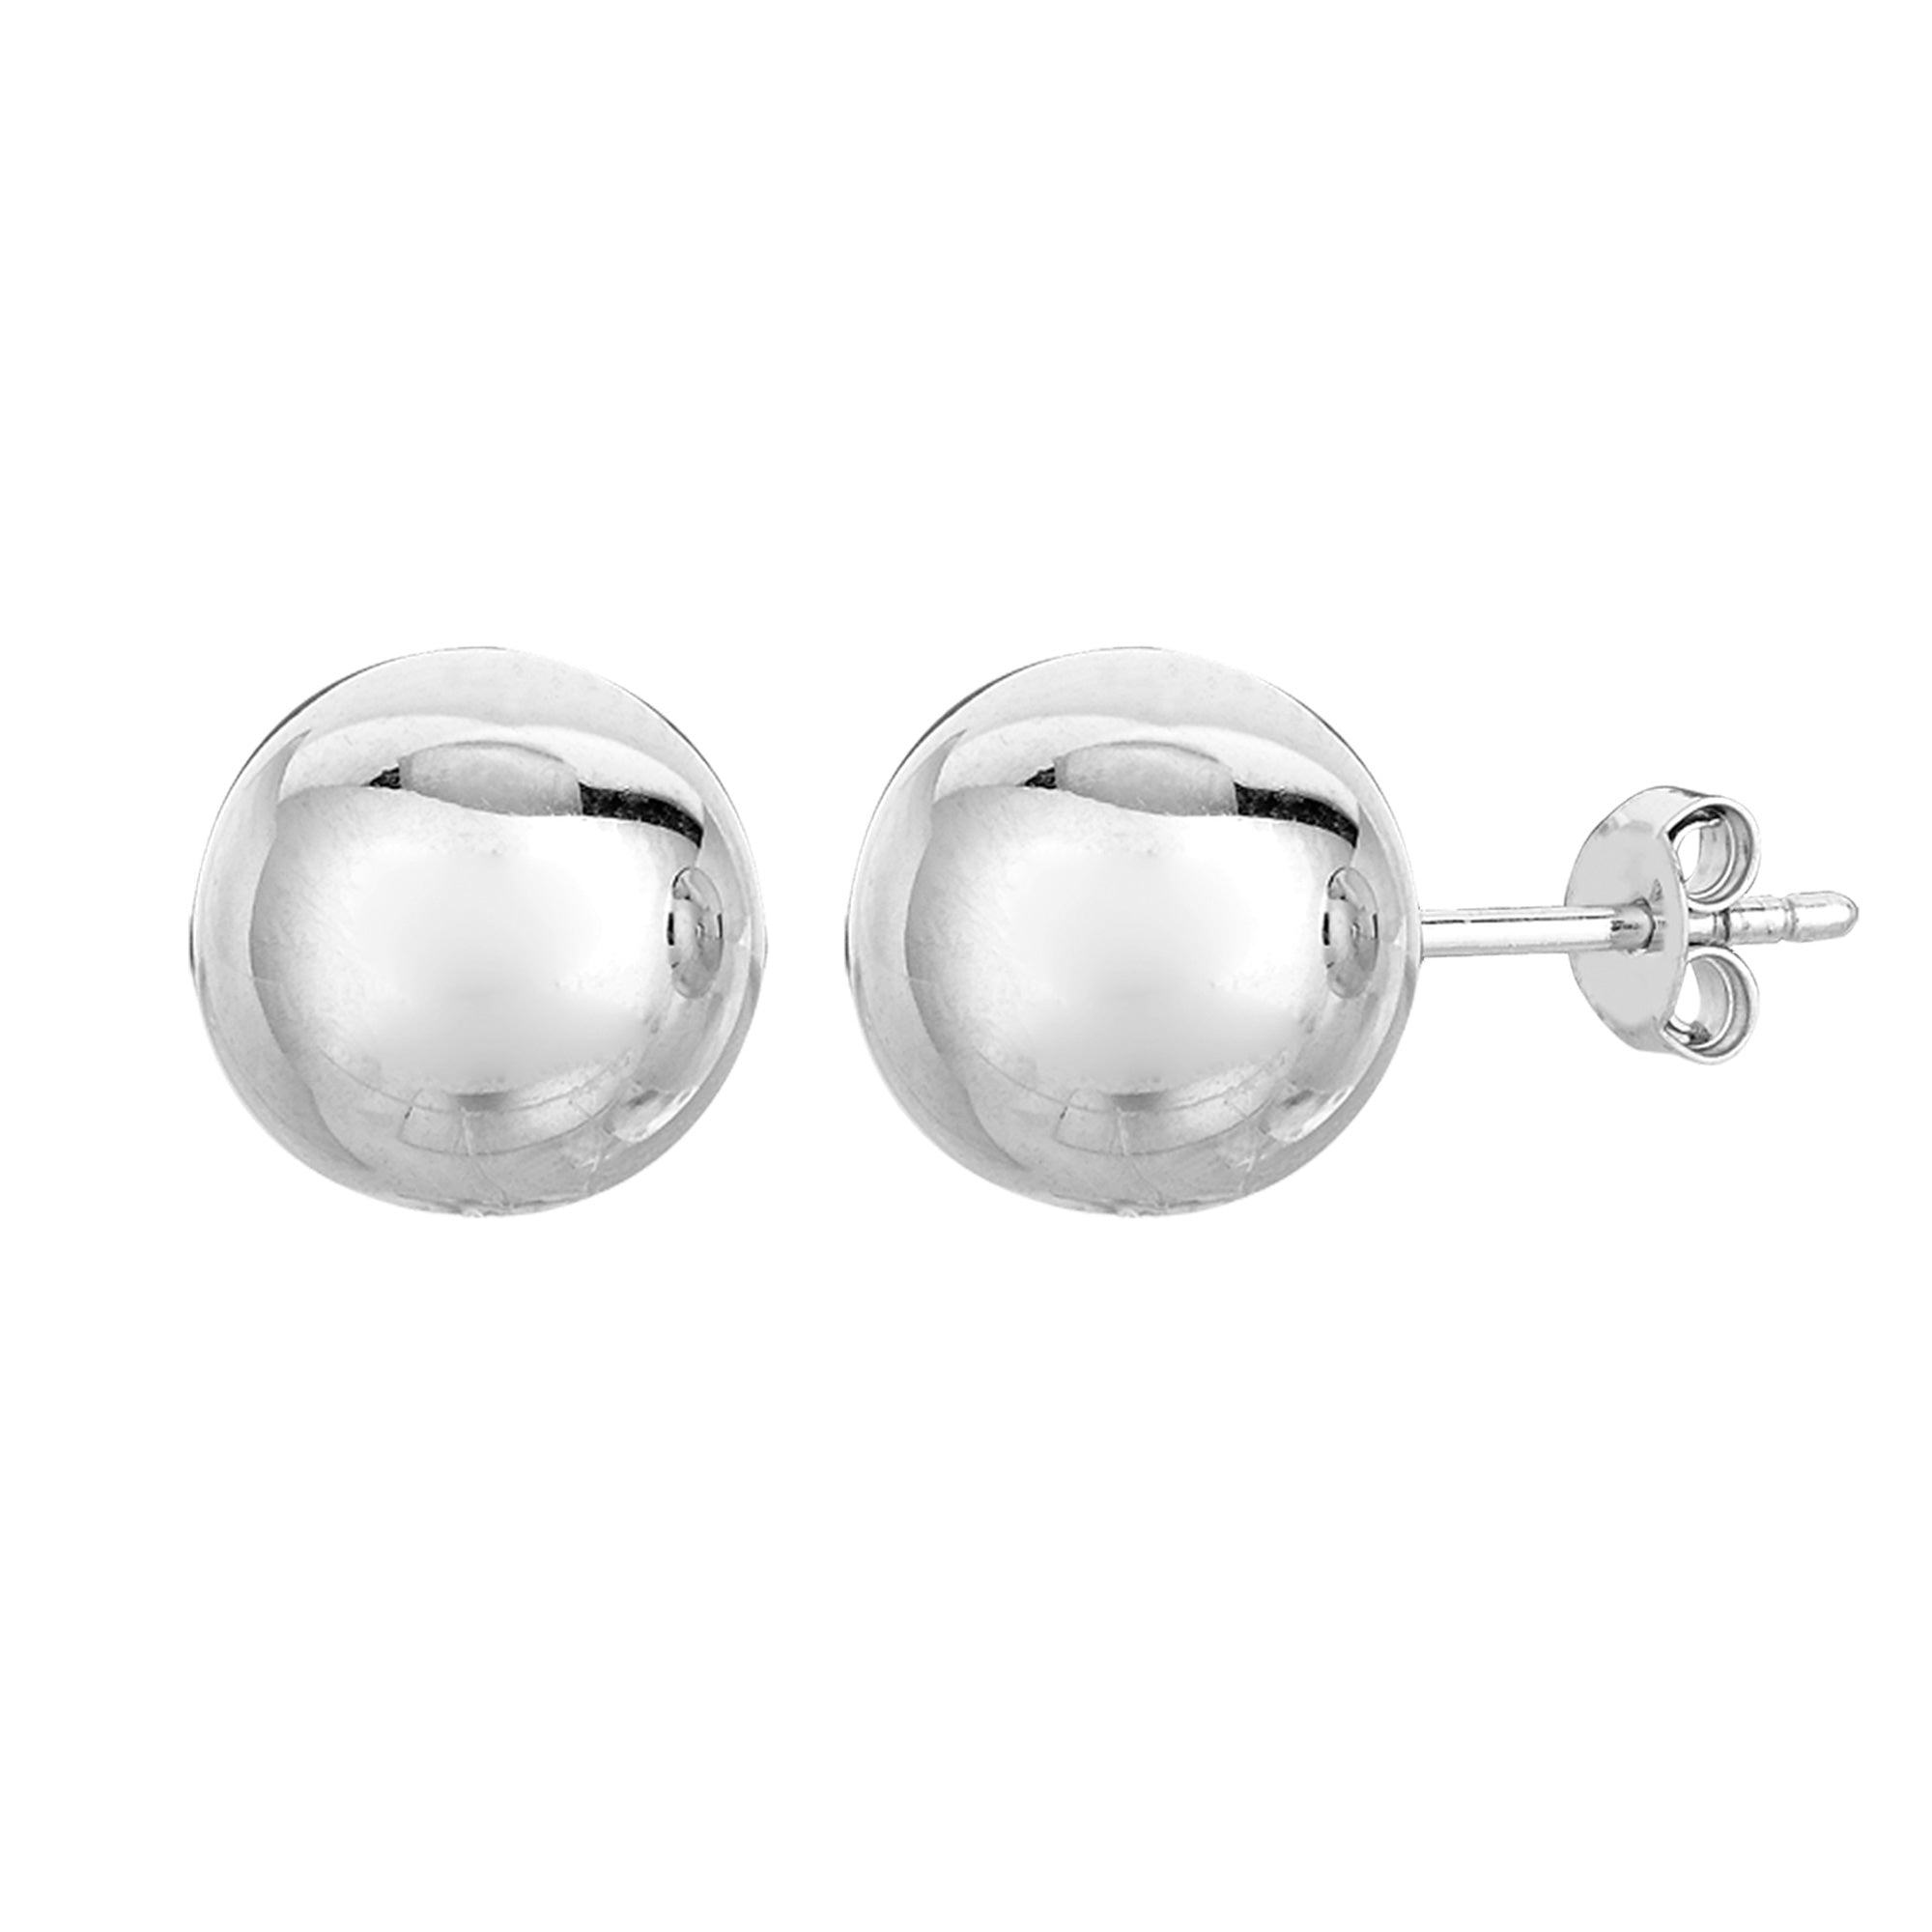 Sterling Silver Ball Stud örhängen fina designersmycken för män och kvinnor